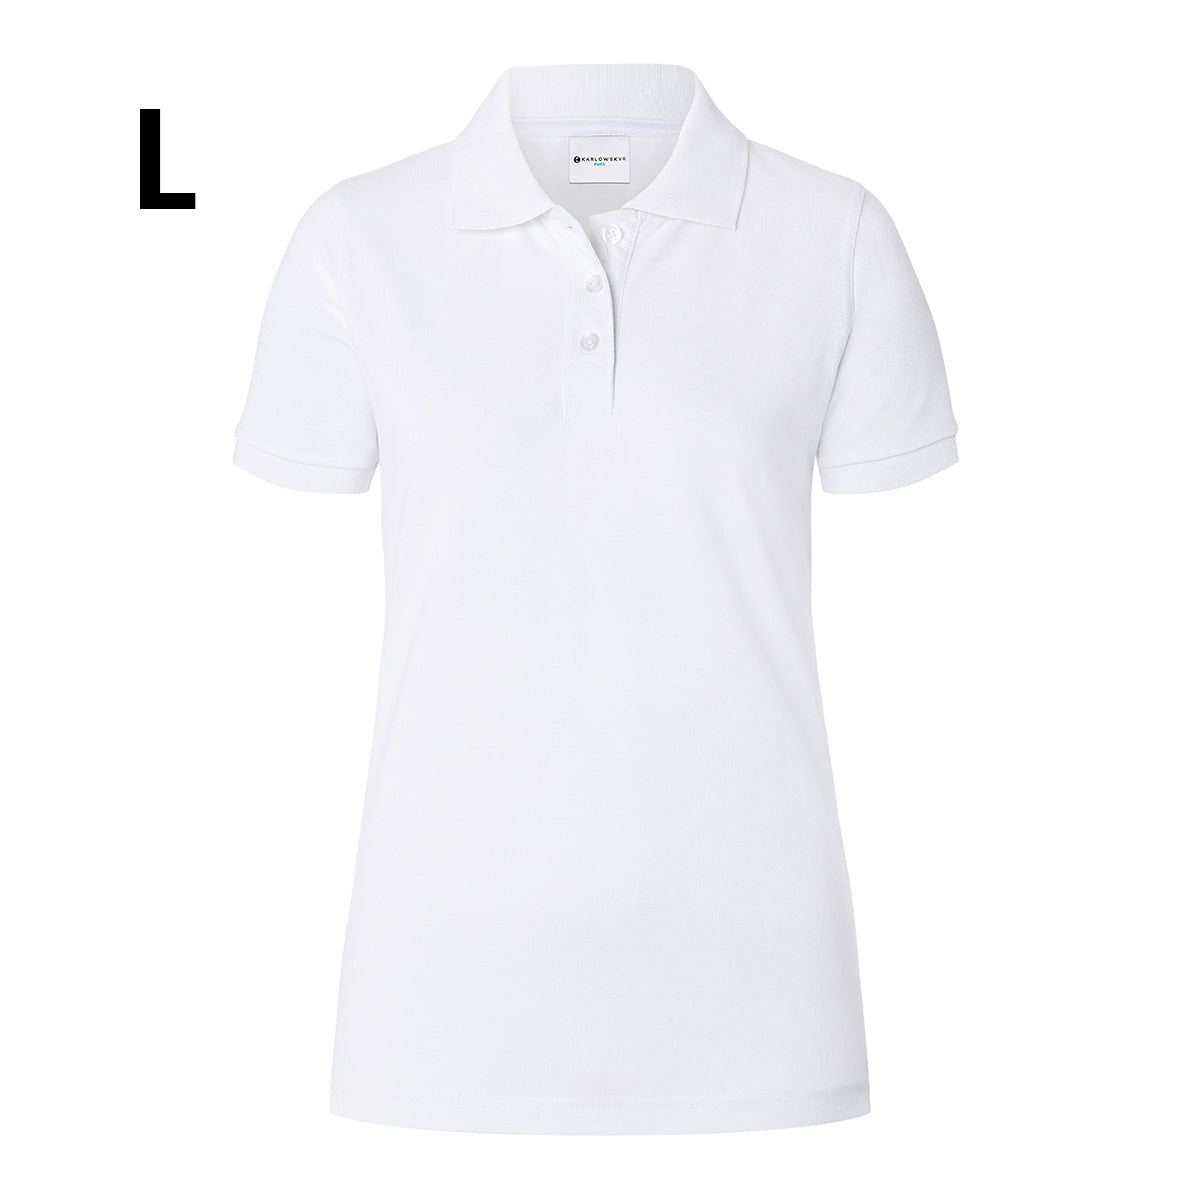 Karlowsky - Arbejdsbeklædning Basic Poloshirt til damer - Hvid - Størrelse: L